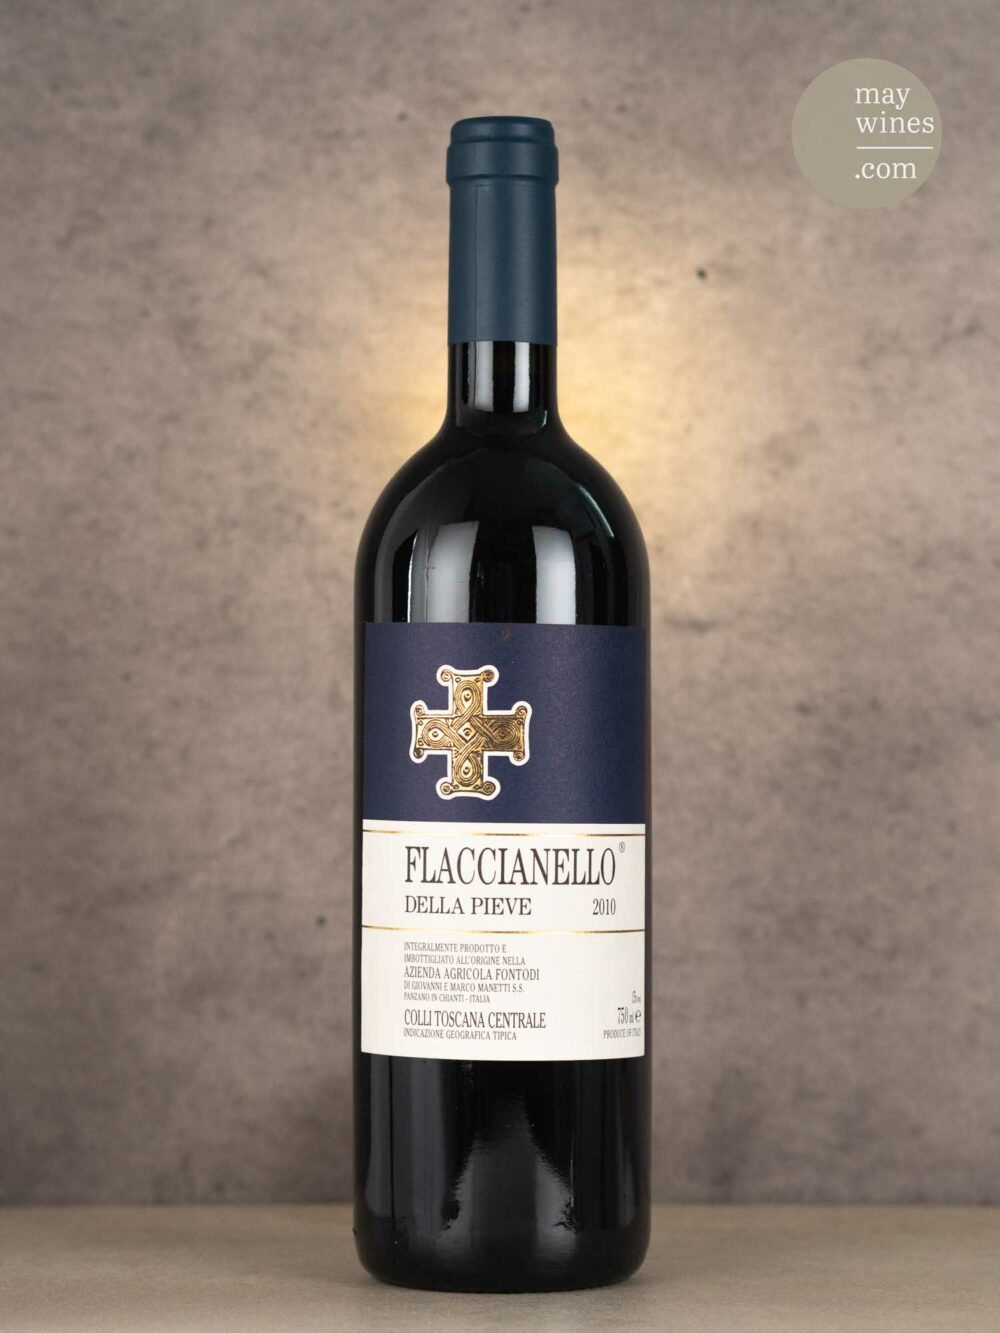 May Wines – Rotwein – 2010 Flaccianello della Pieve - Fontodi